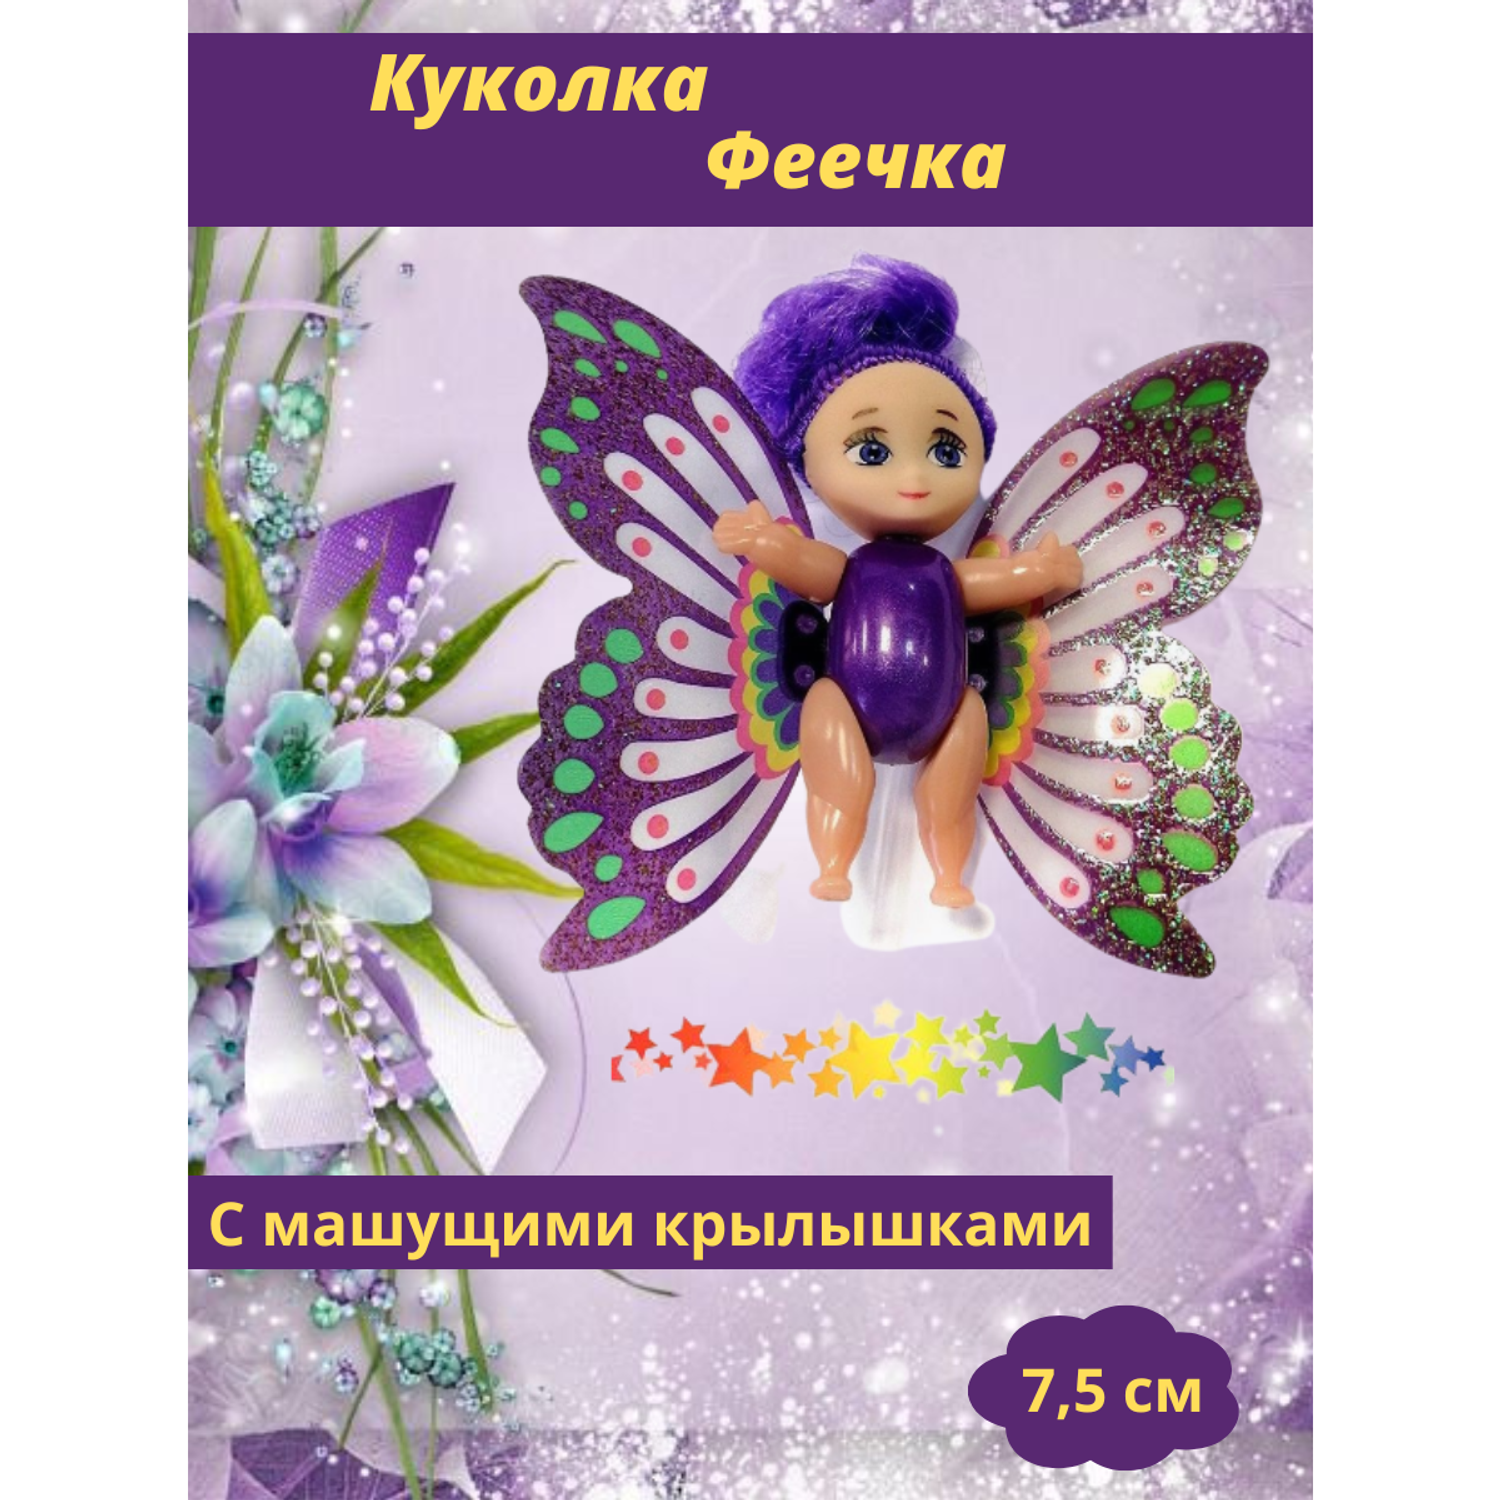 Мини кукла подвижная EstaBella Фея с машущими крылышками 7.5 см фиолетовая 89293 - фото 2